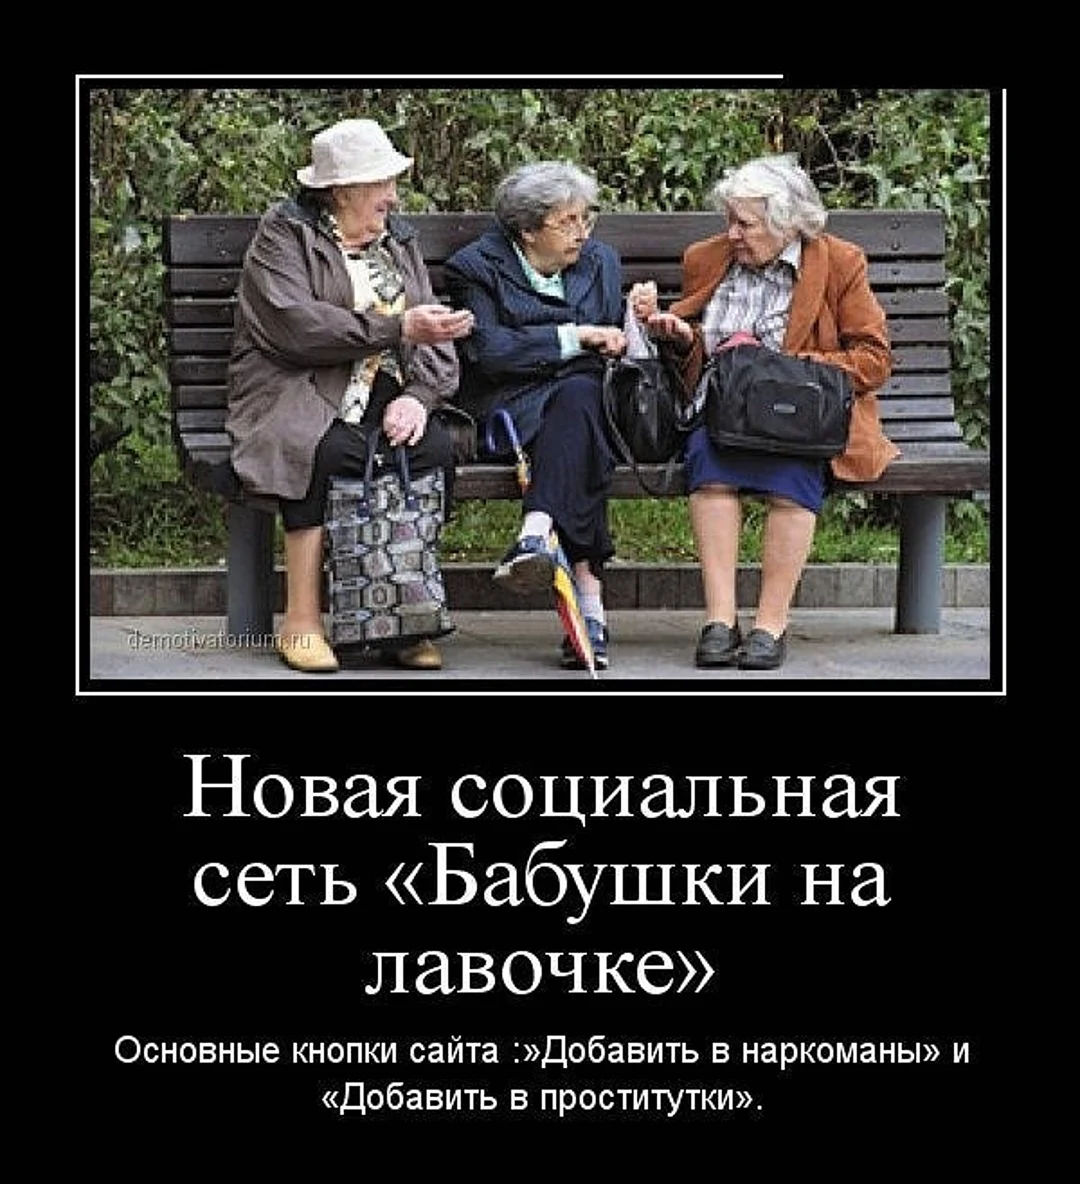 Демотиваторы про бабушек. Картинка